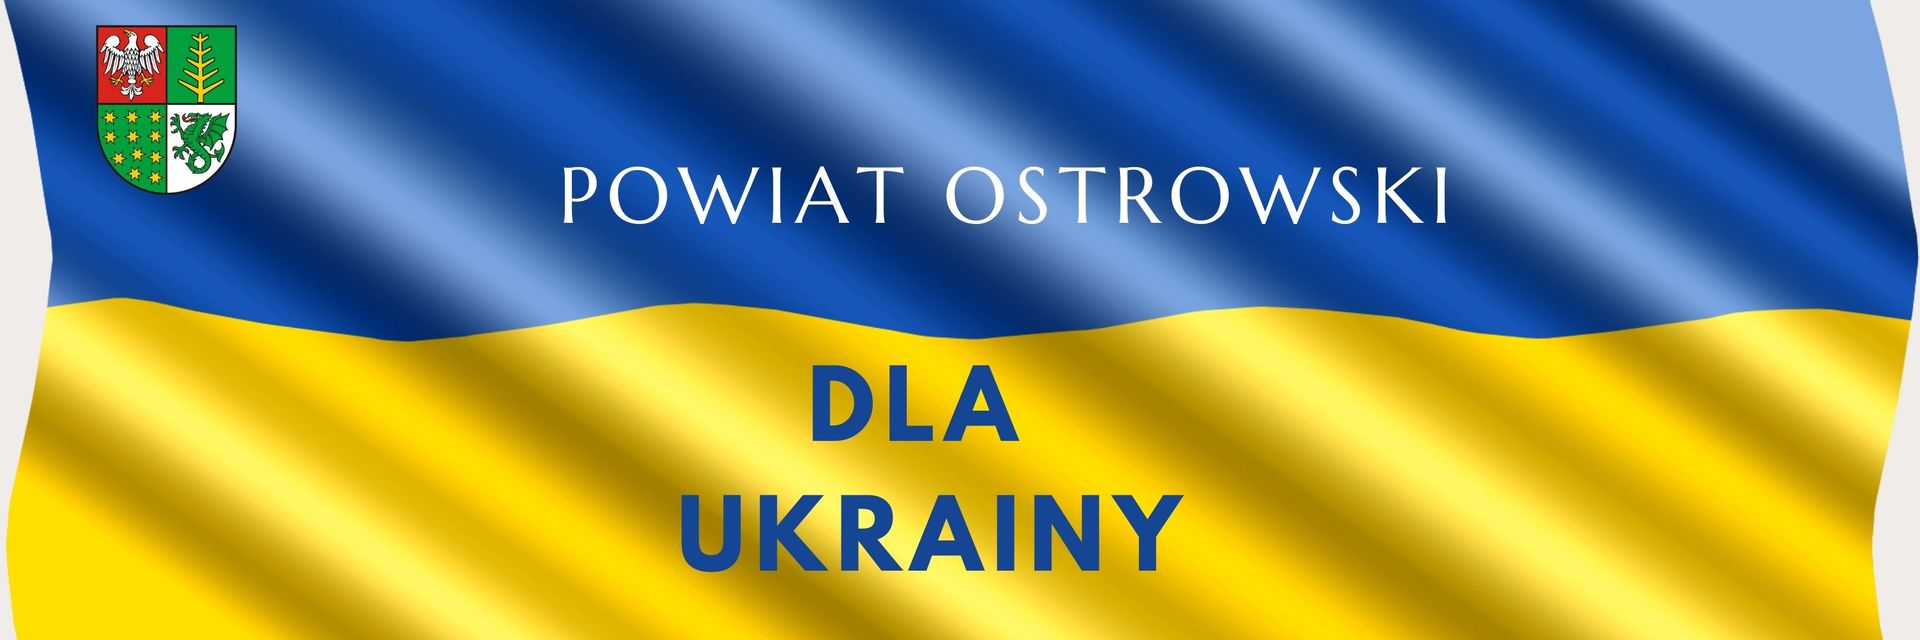 Powiat Ostrowski dla Ukrainy 